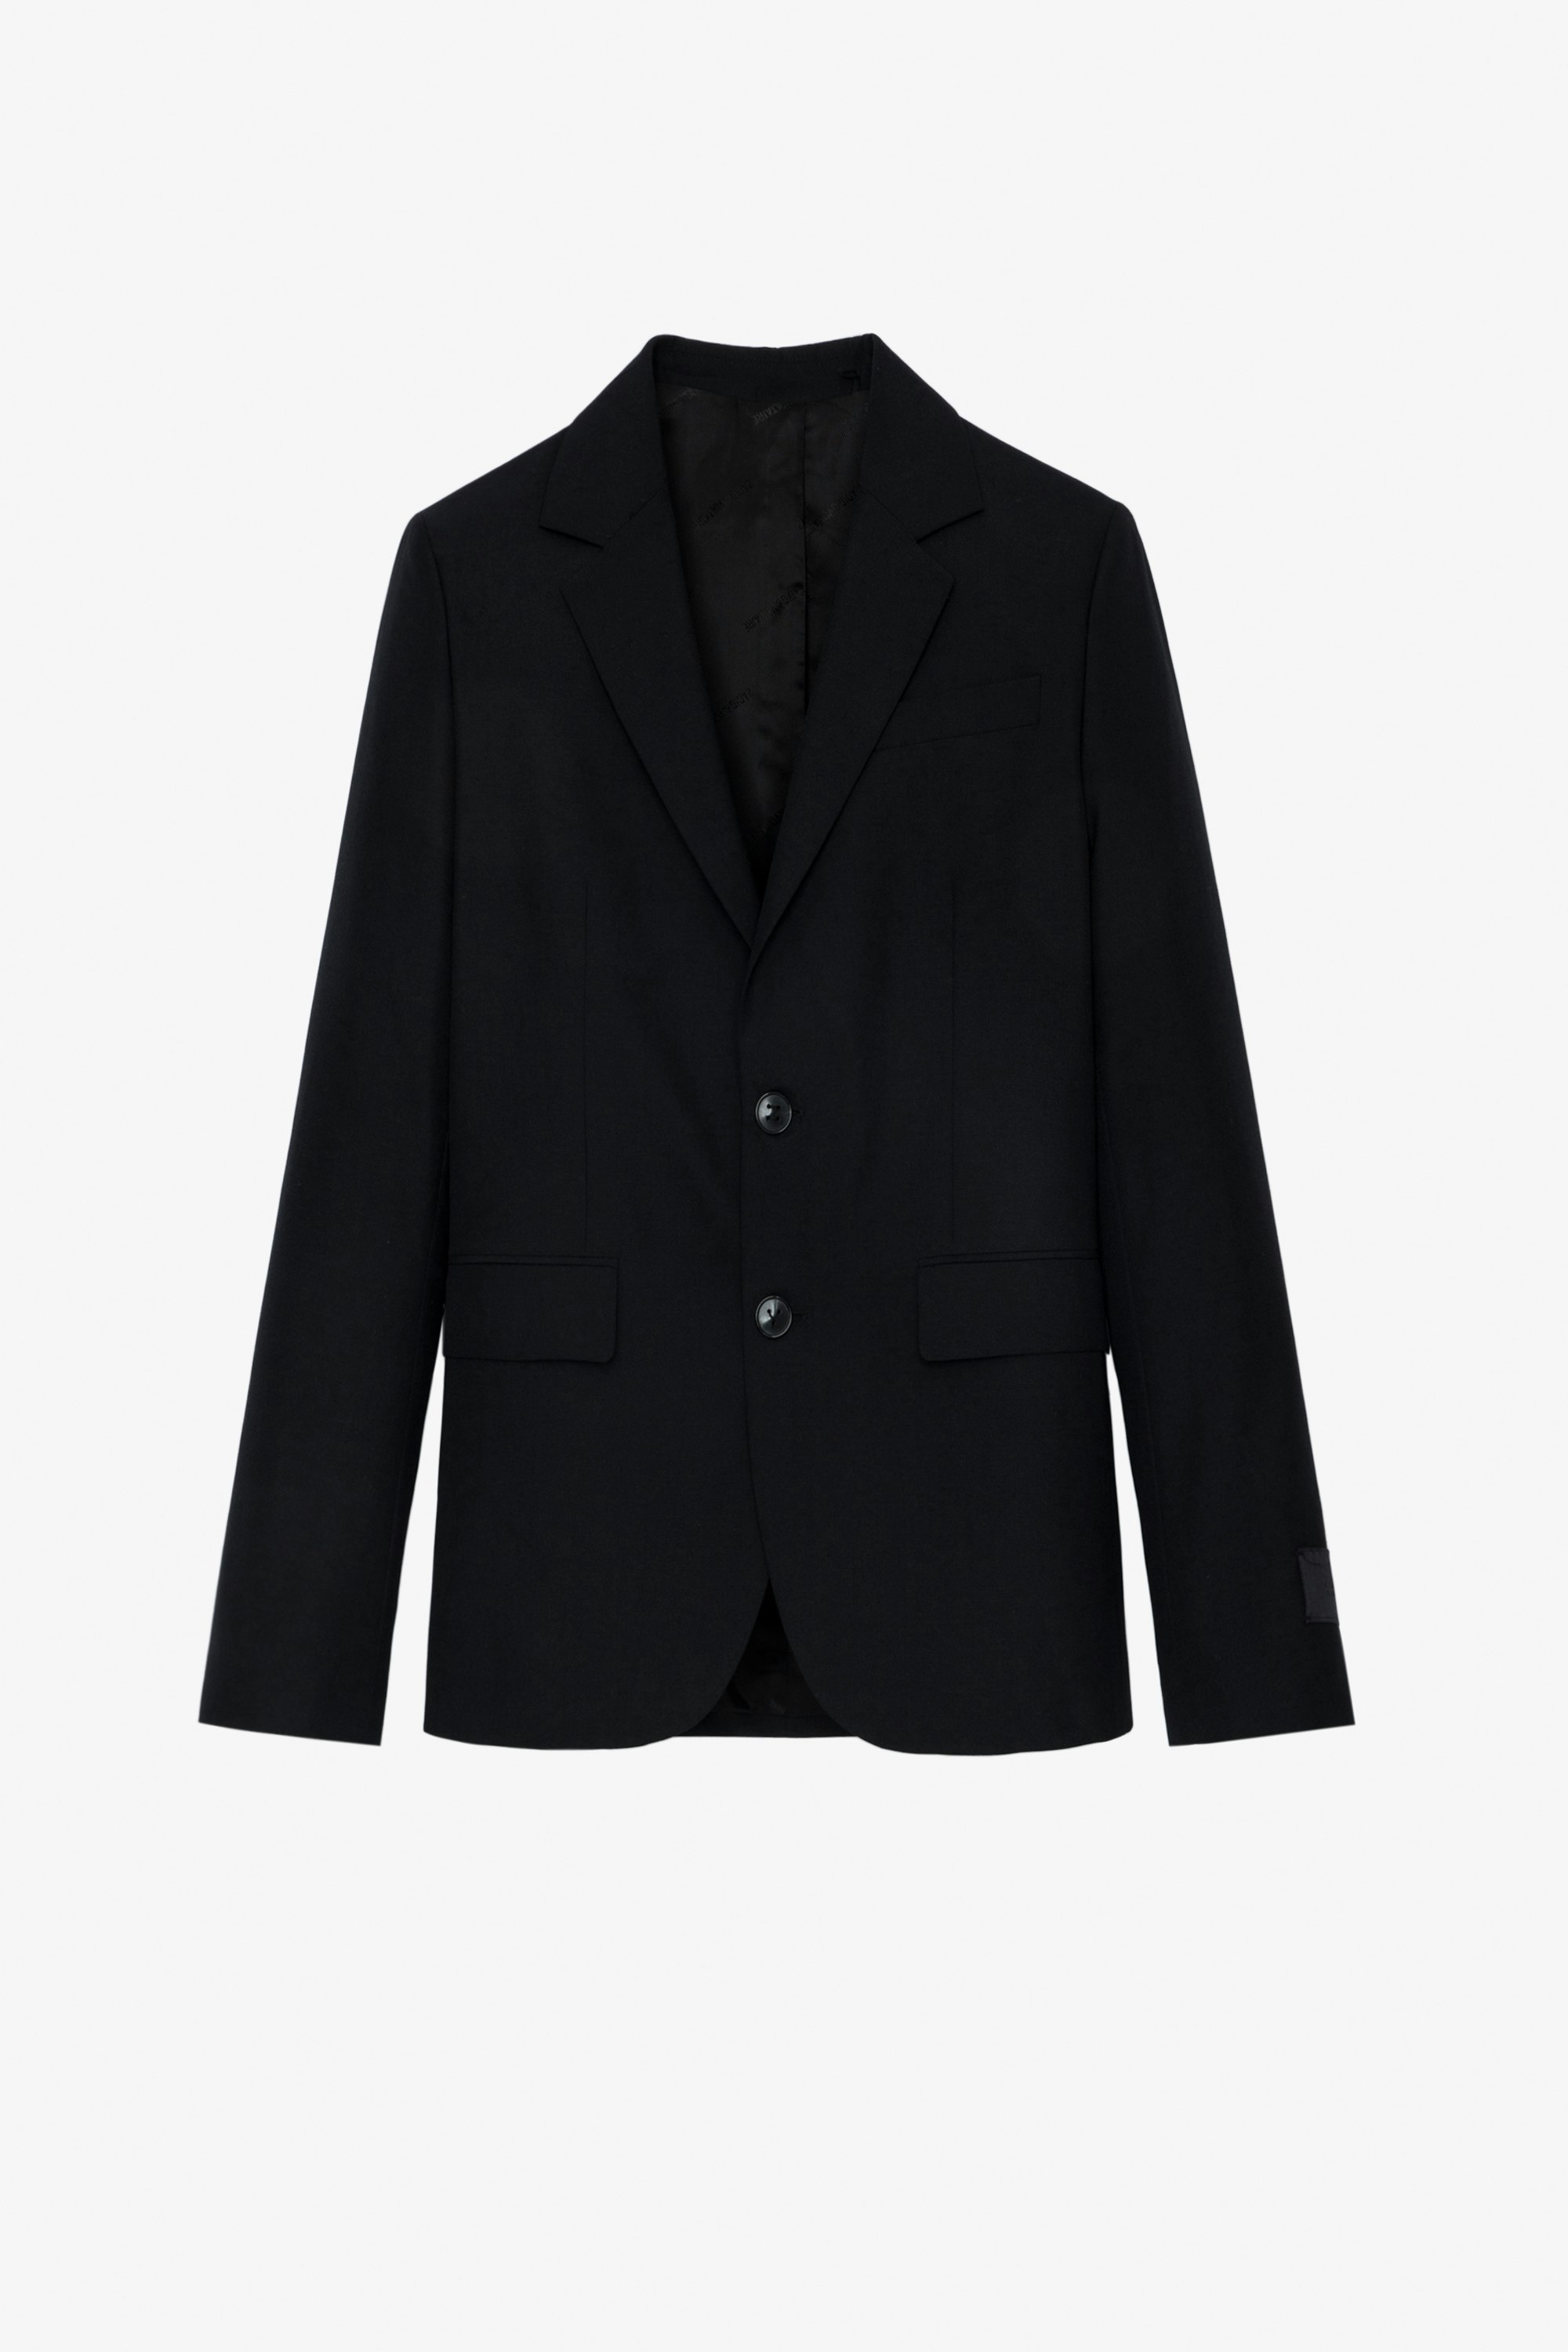 Viks Blazer - Women’s black suit blazer with pockets